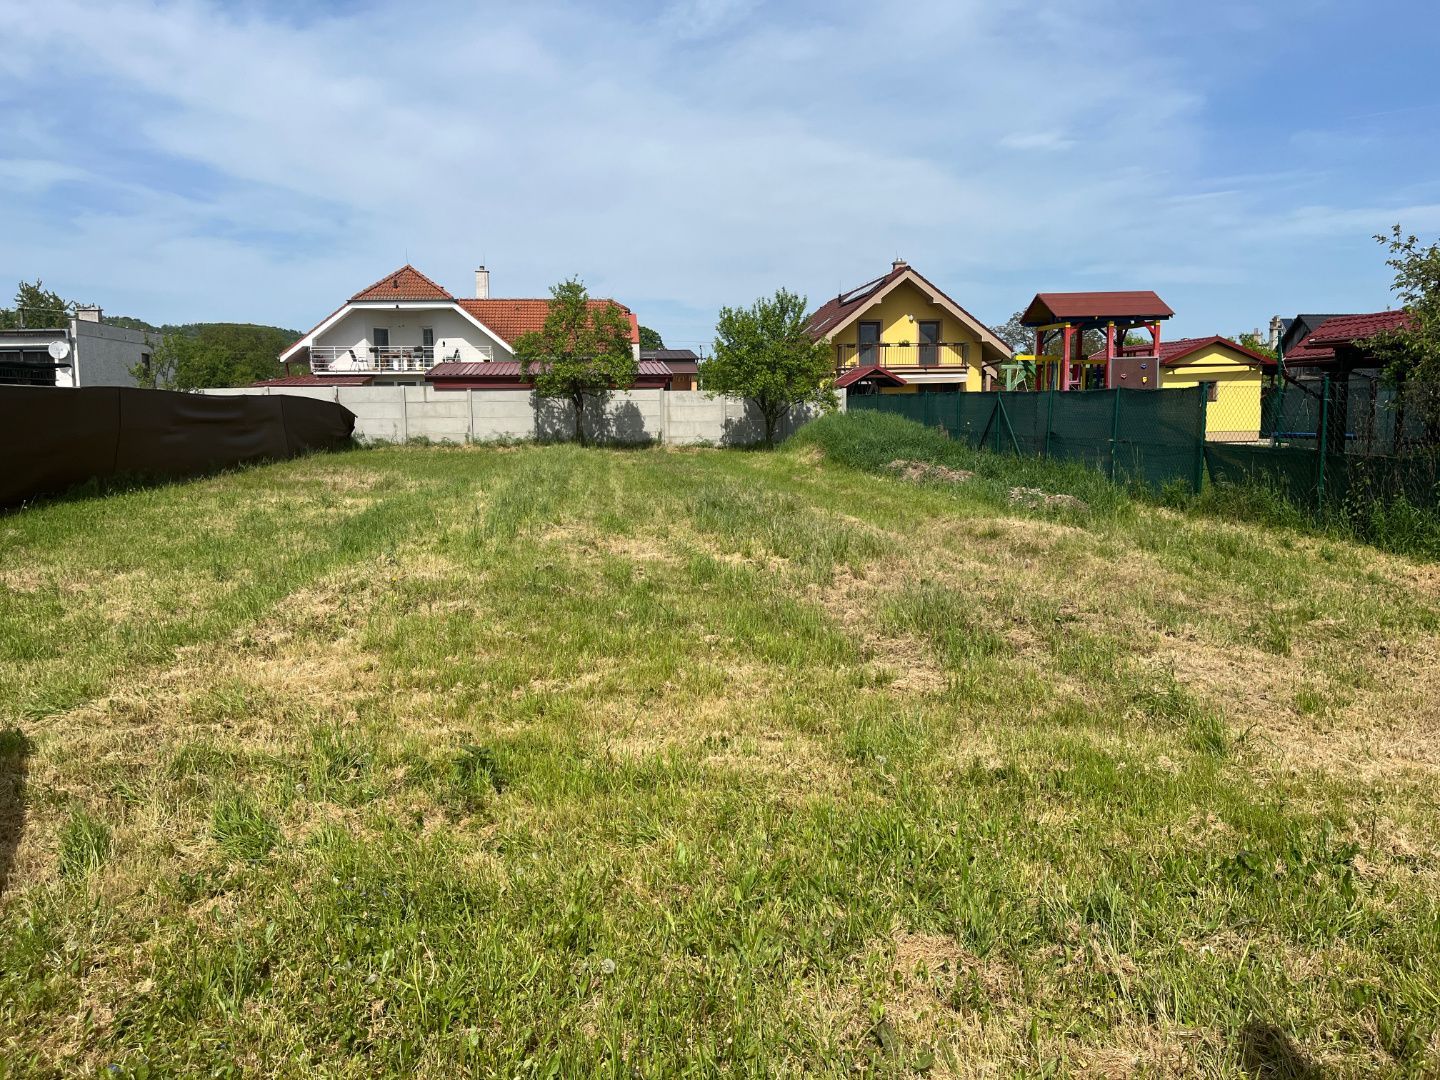 Stavebný pozemok 1187 m2 so starším domom v  Chocholnej-Velčiciach